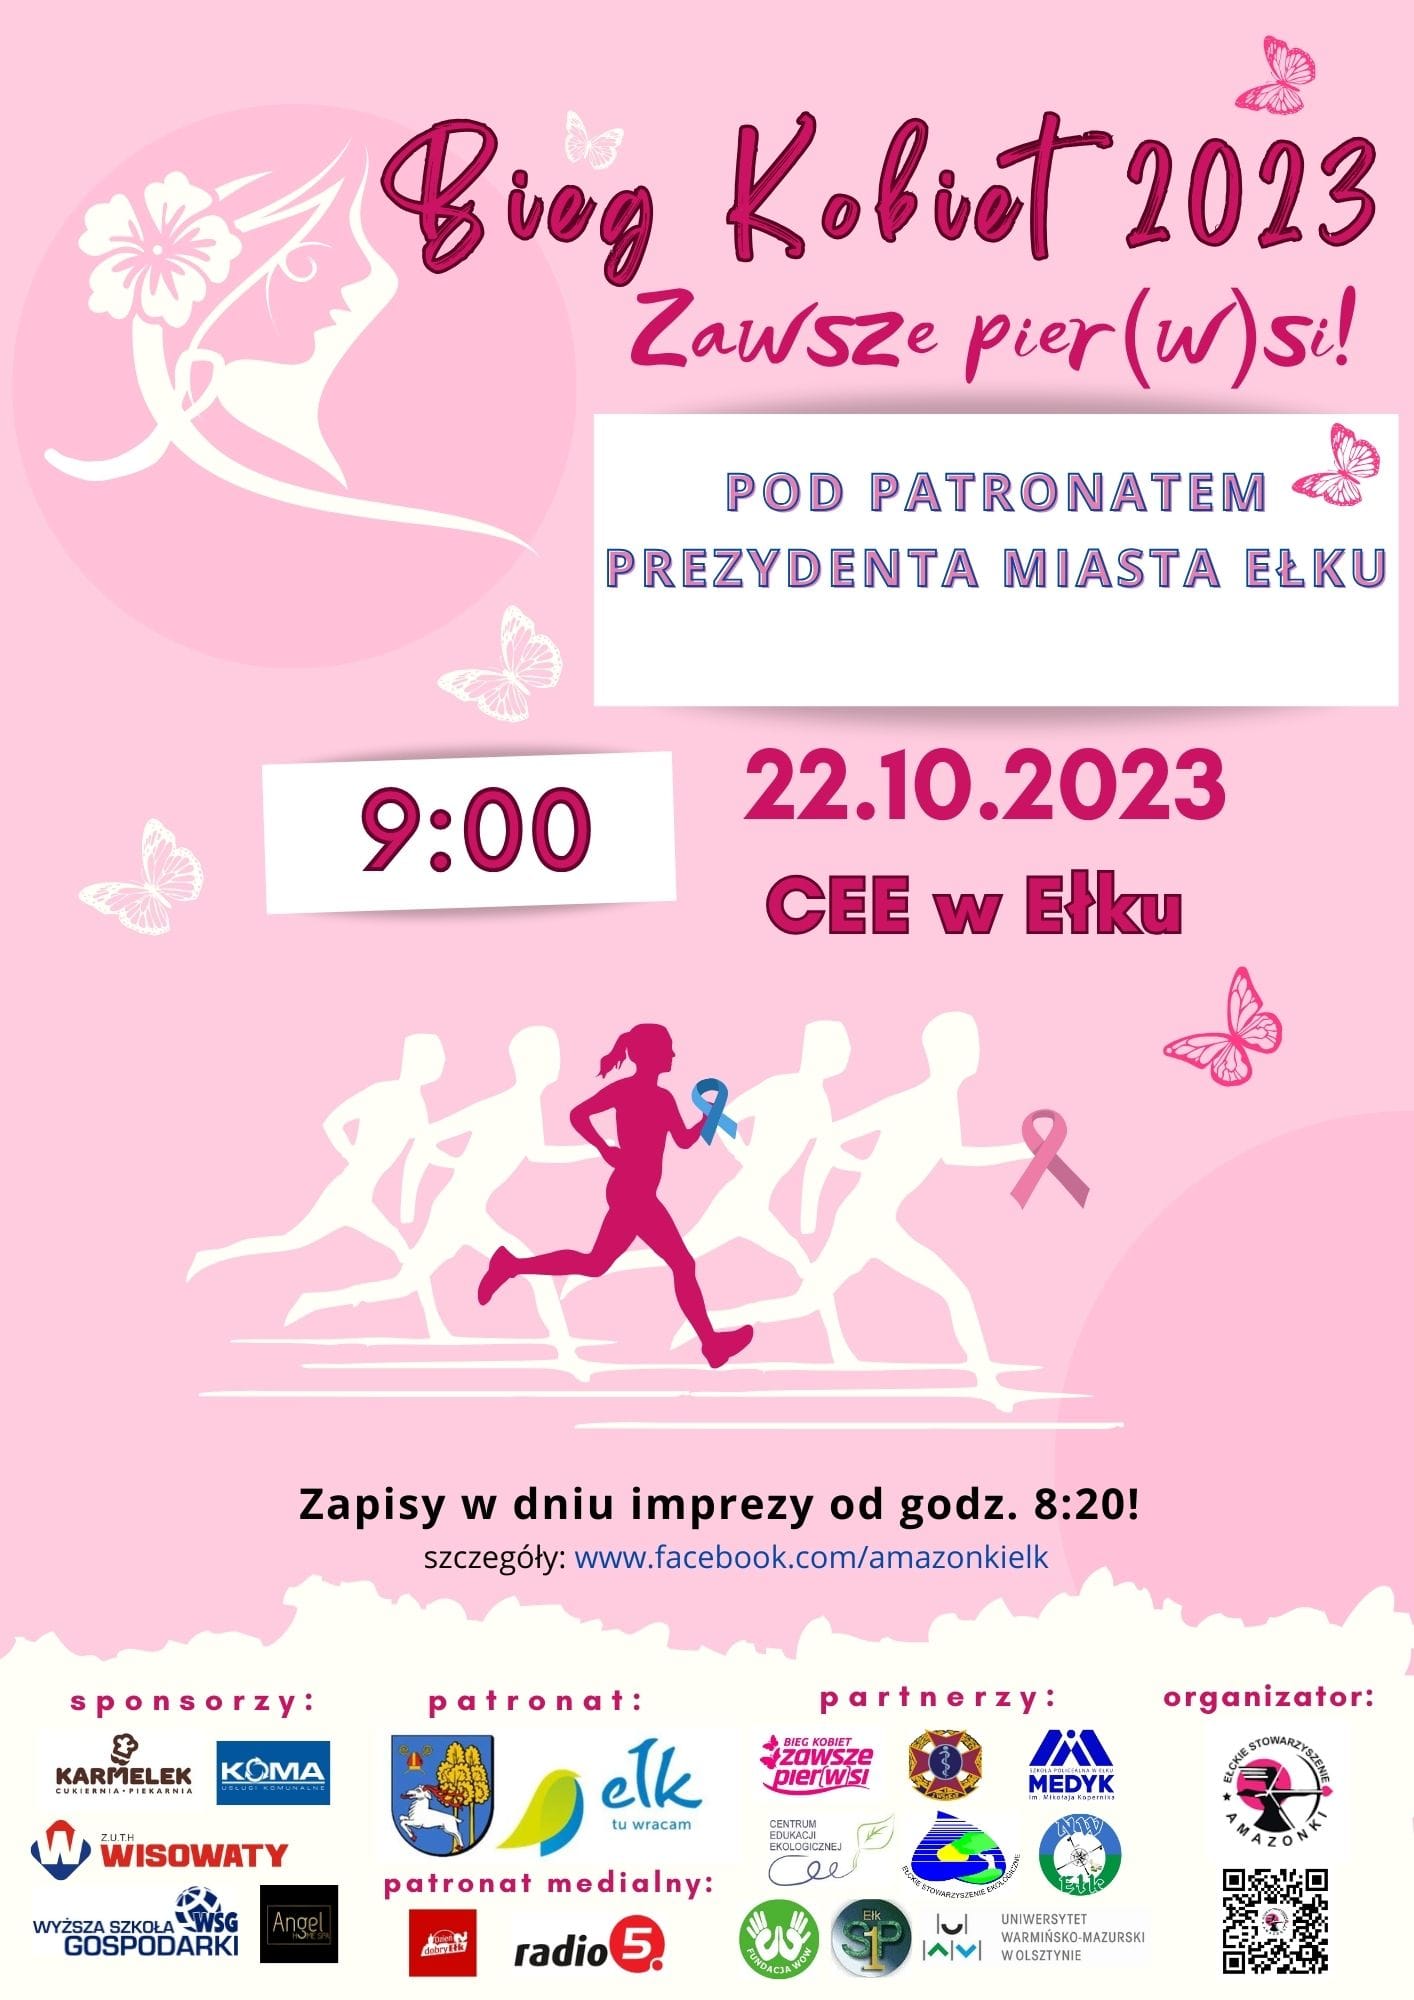 Frauenlauf 2023 im Rahmen der Brustkrebsprävention!